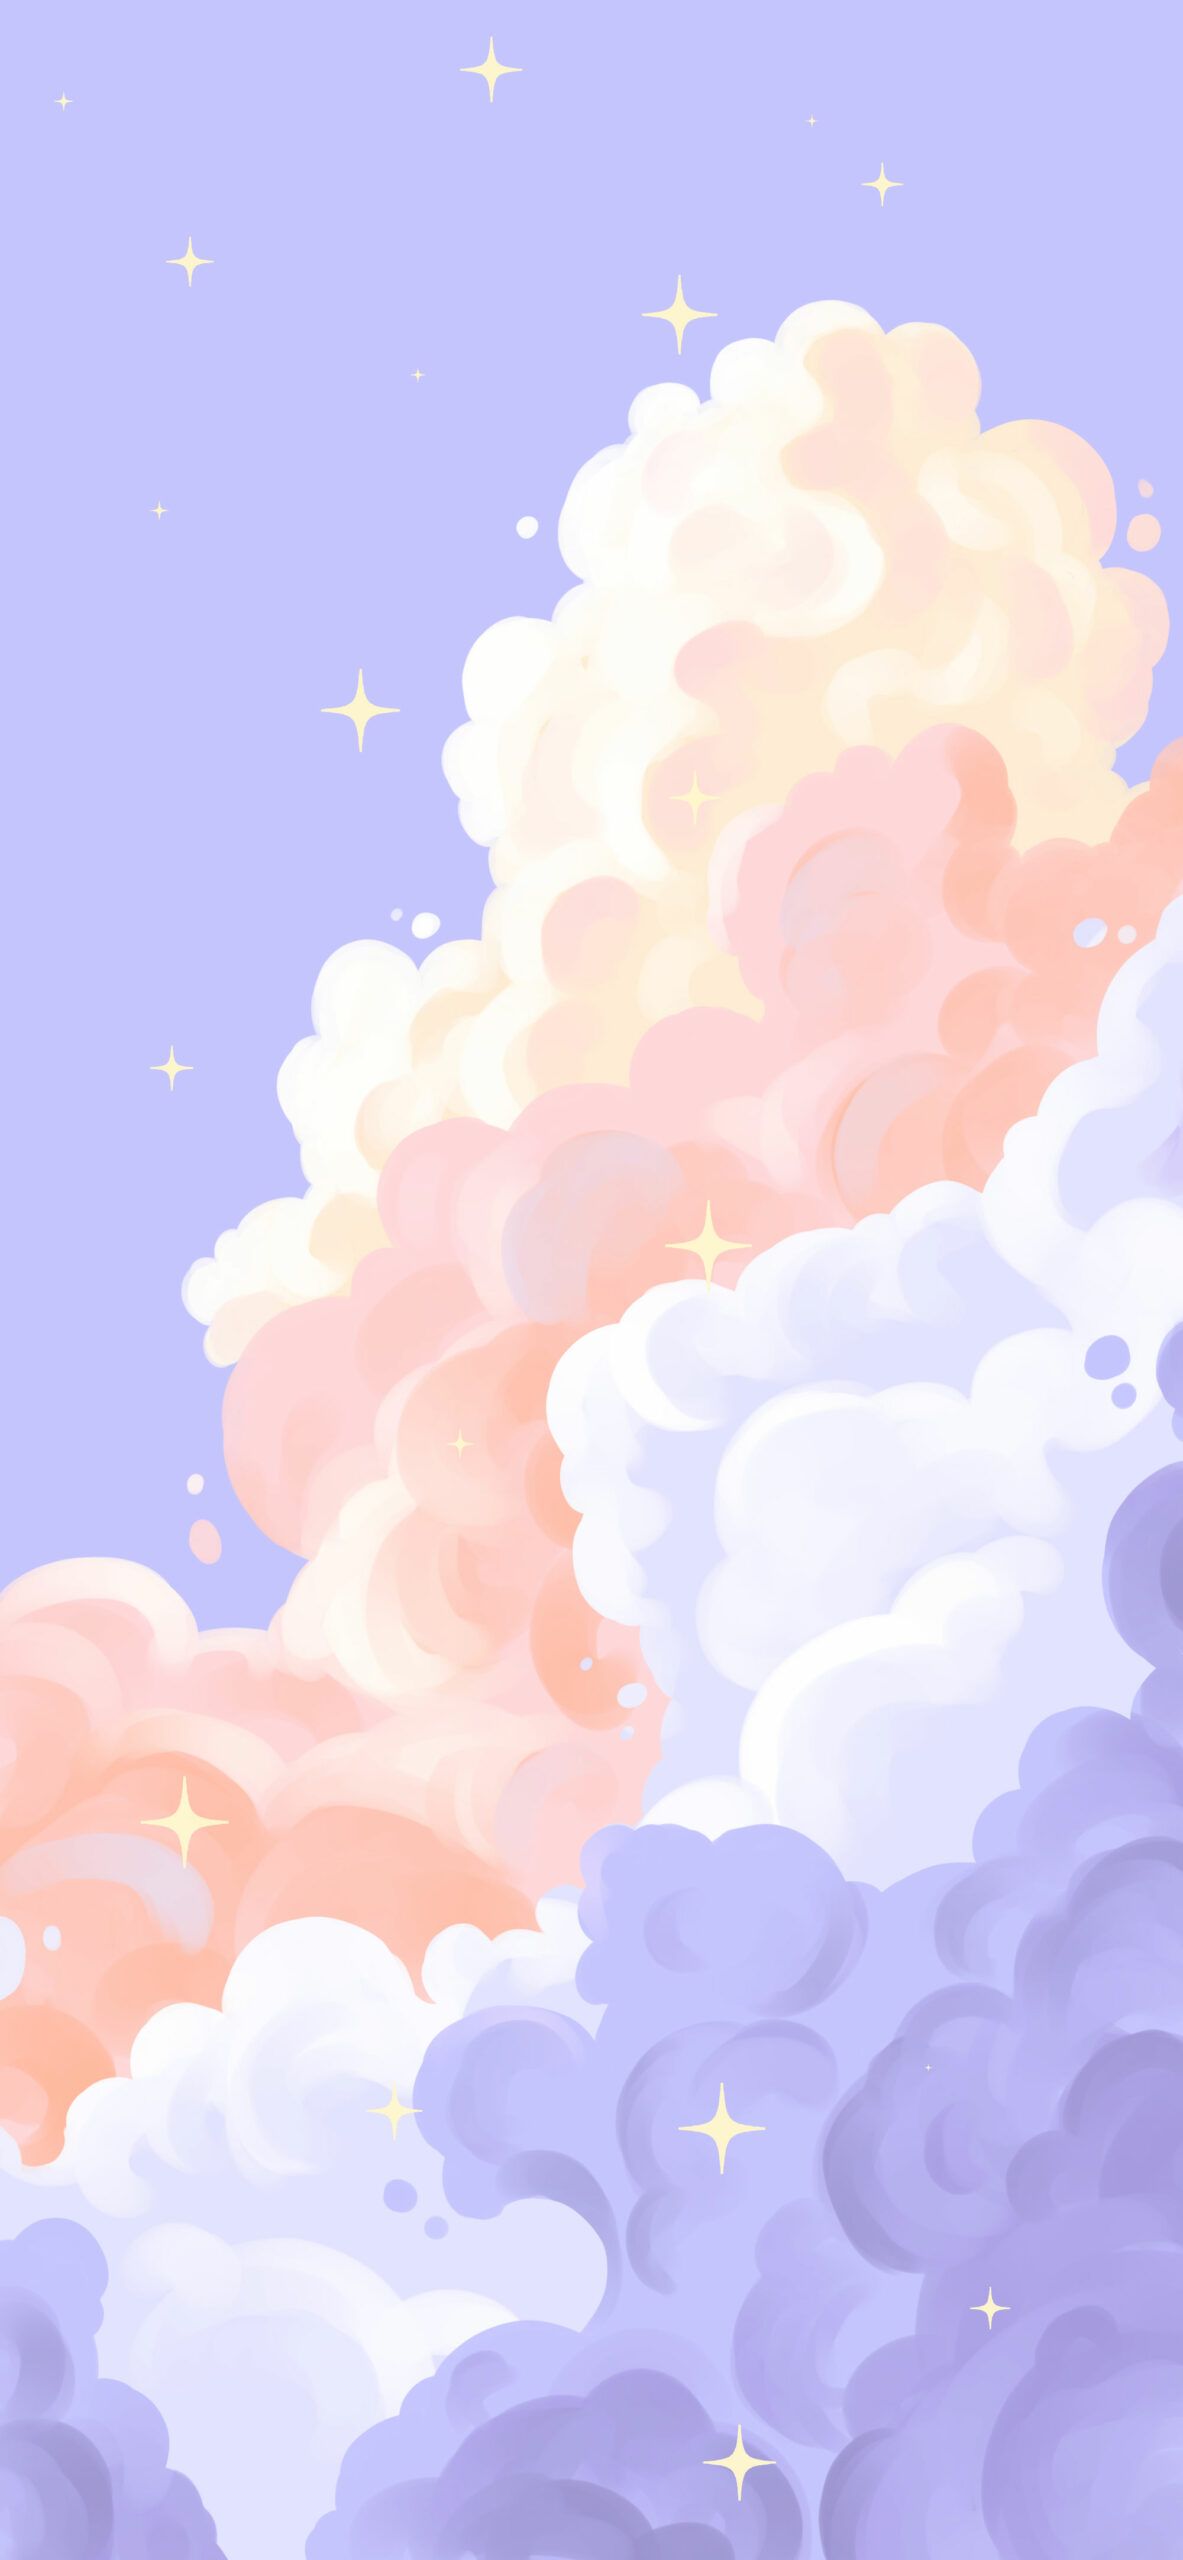  Zeichnungen Hintergrundbild 1183x2560. Aesthetic Clouds Purple Wallpaper Wallpaper iPhone ☁︎